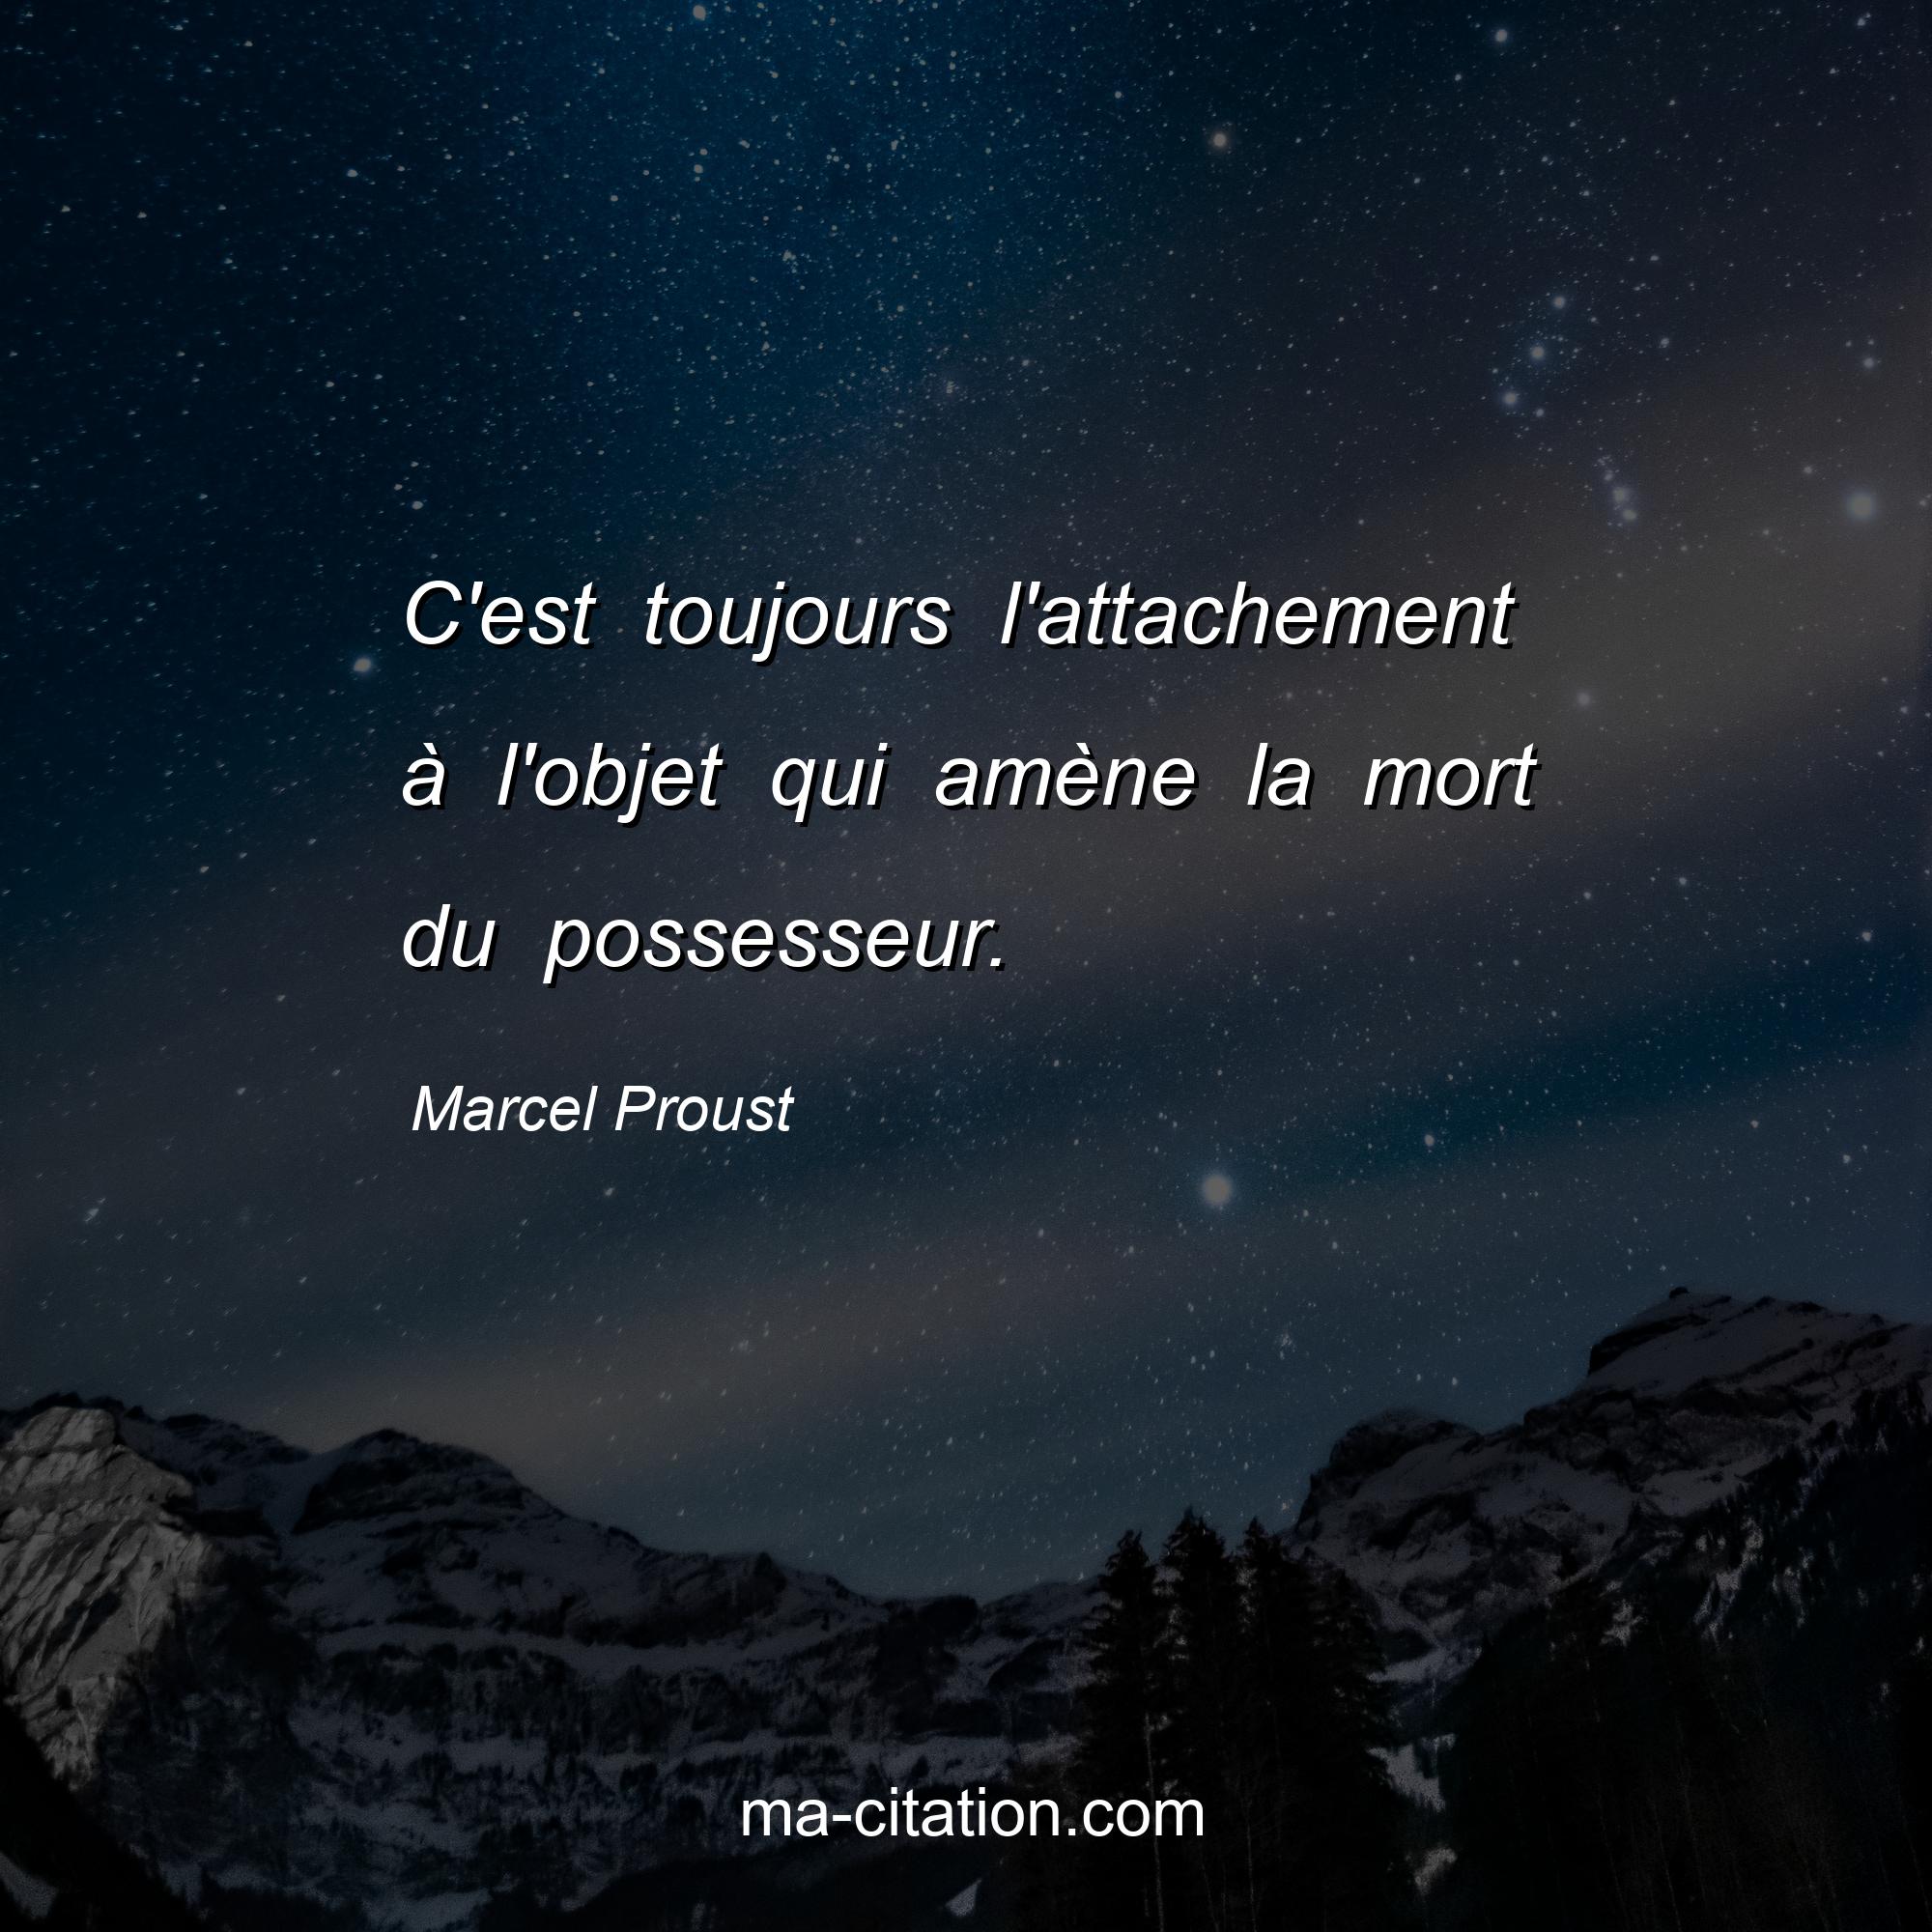 Marcel Proust : C'est toujours l'attachement à l'objet qui amène la mort du possesseur.